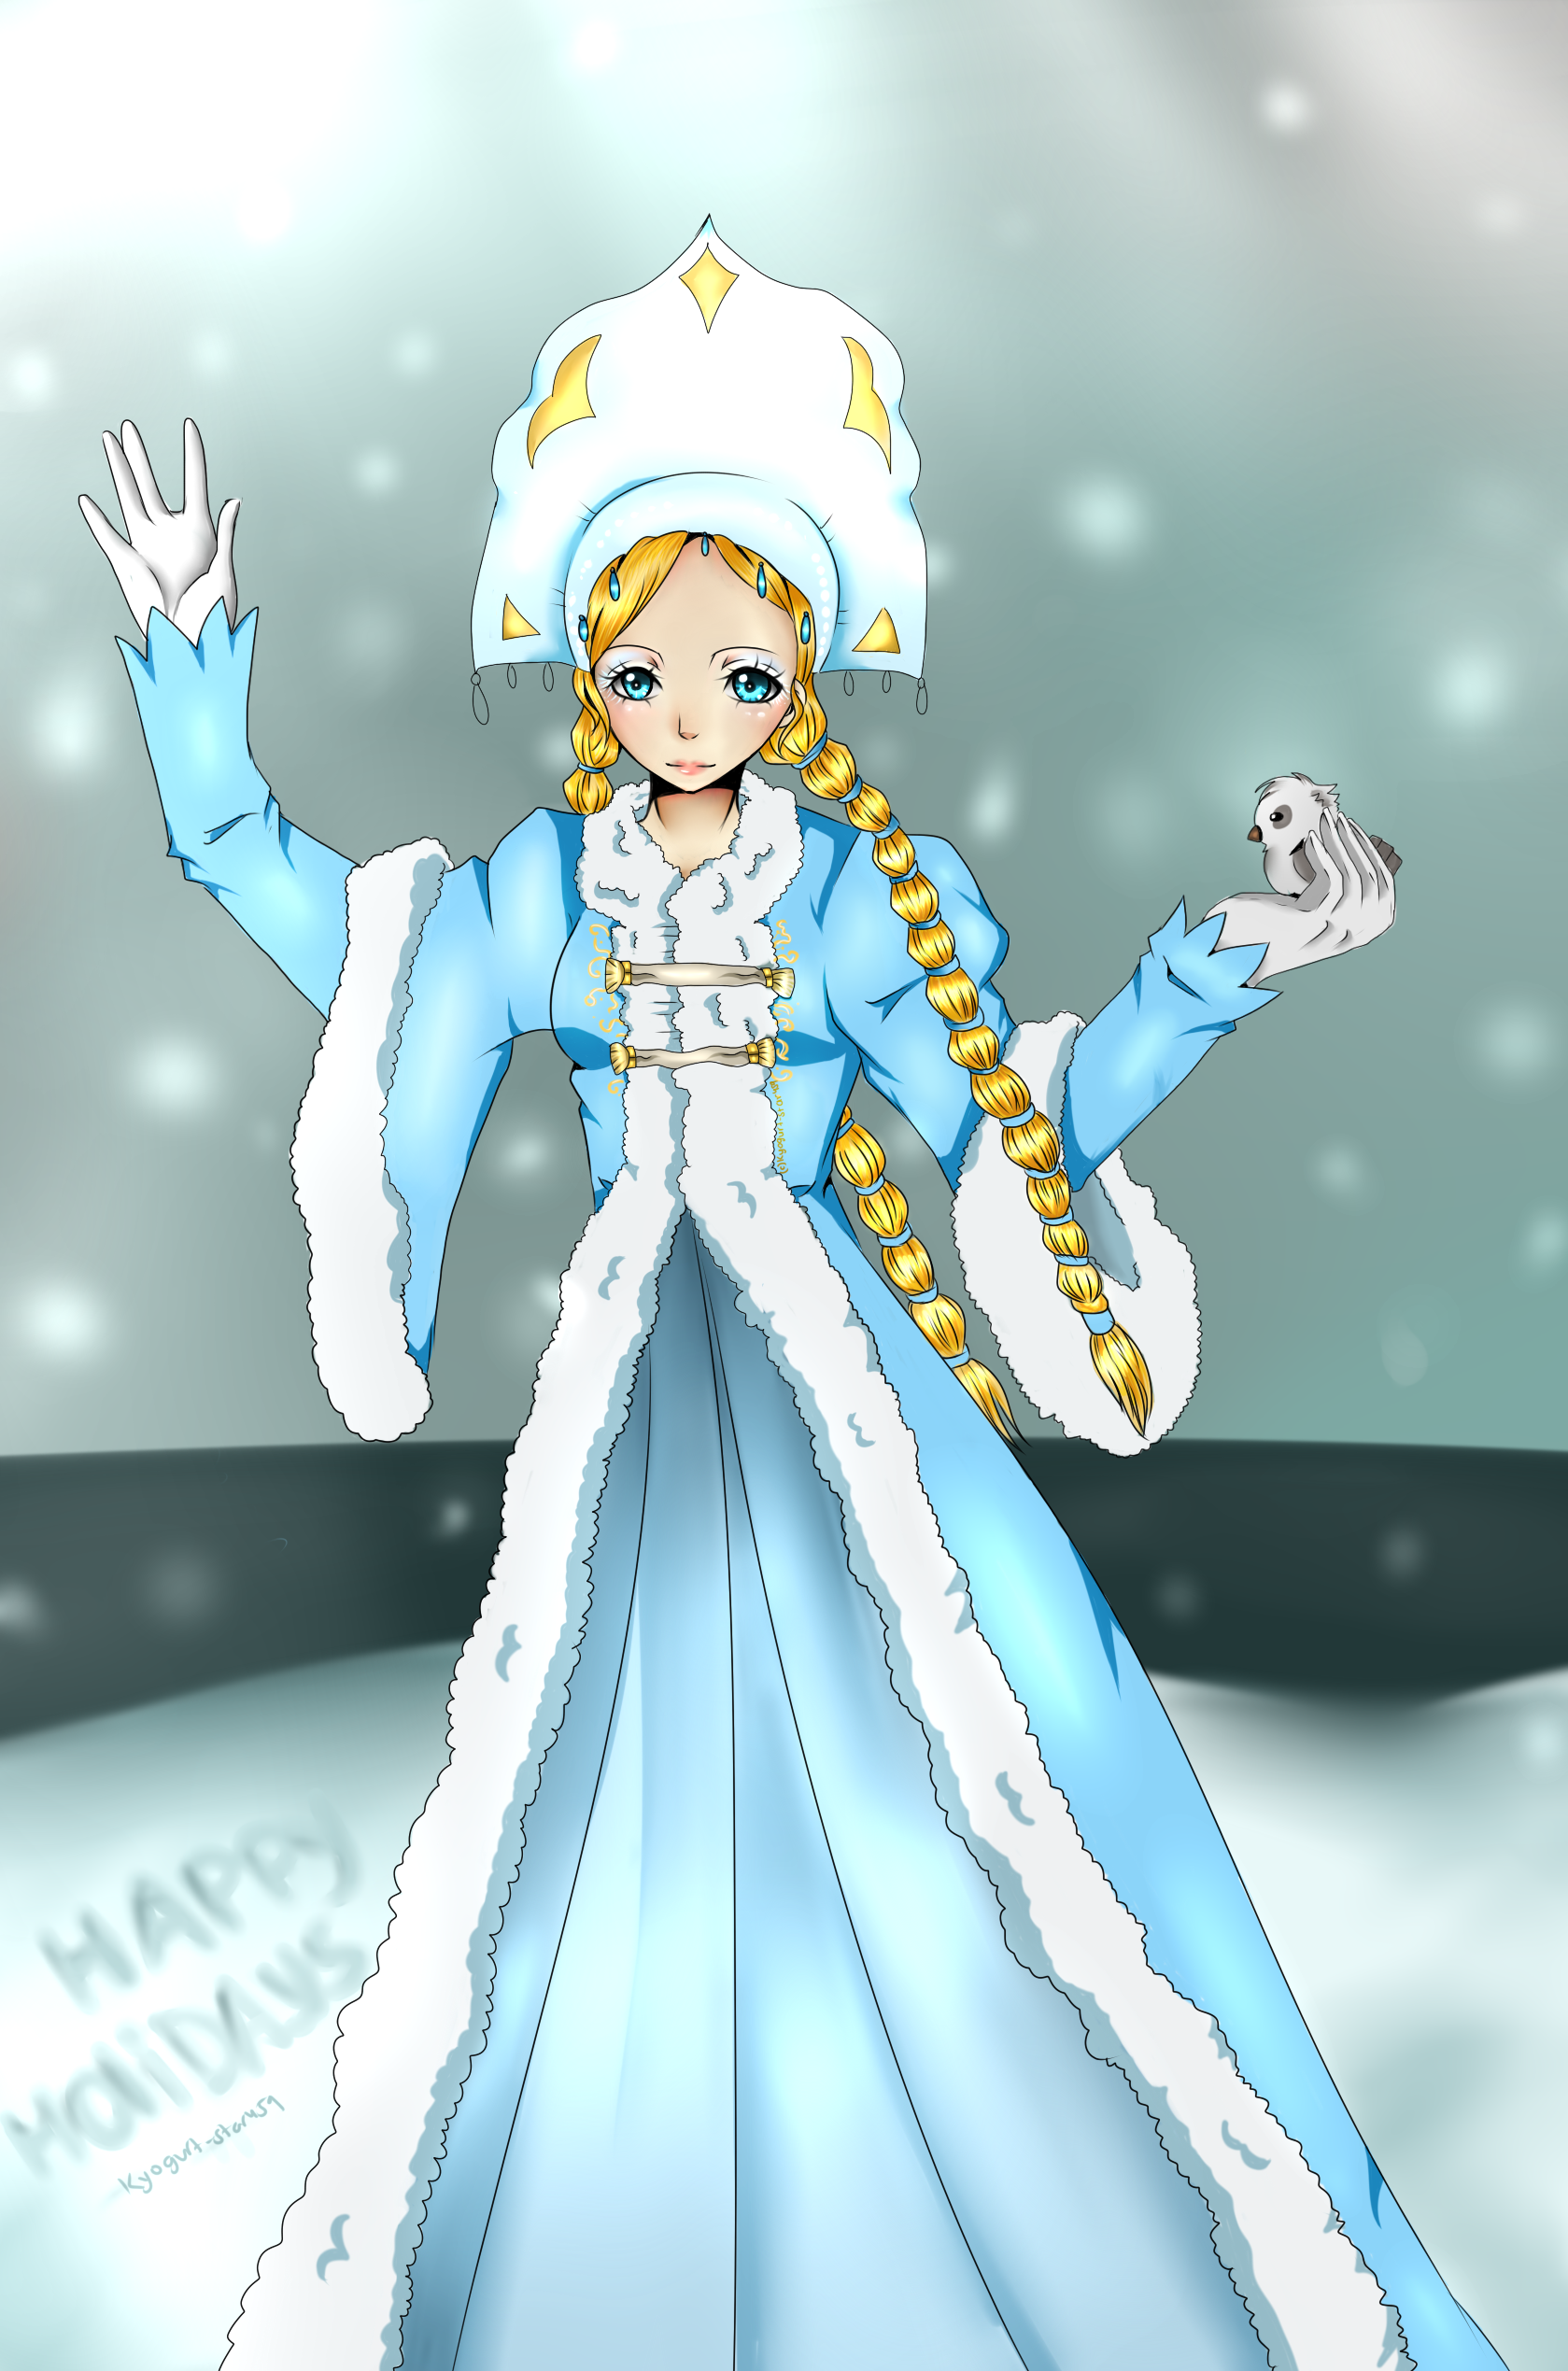 Snegurichka Snow Maiden :: by Kyogurt-Star459 on DeviantArt